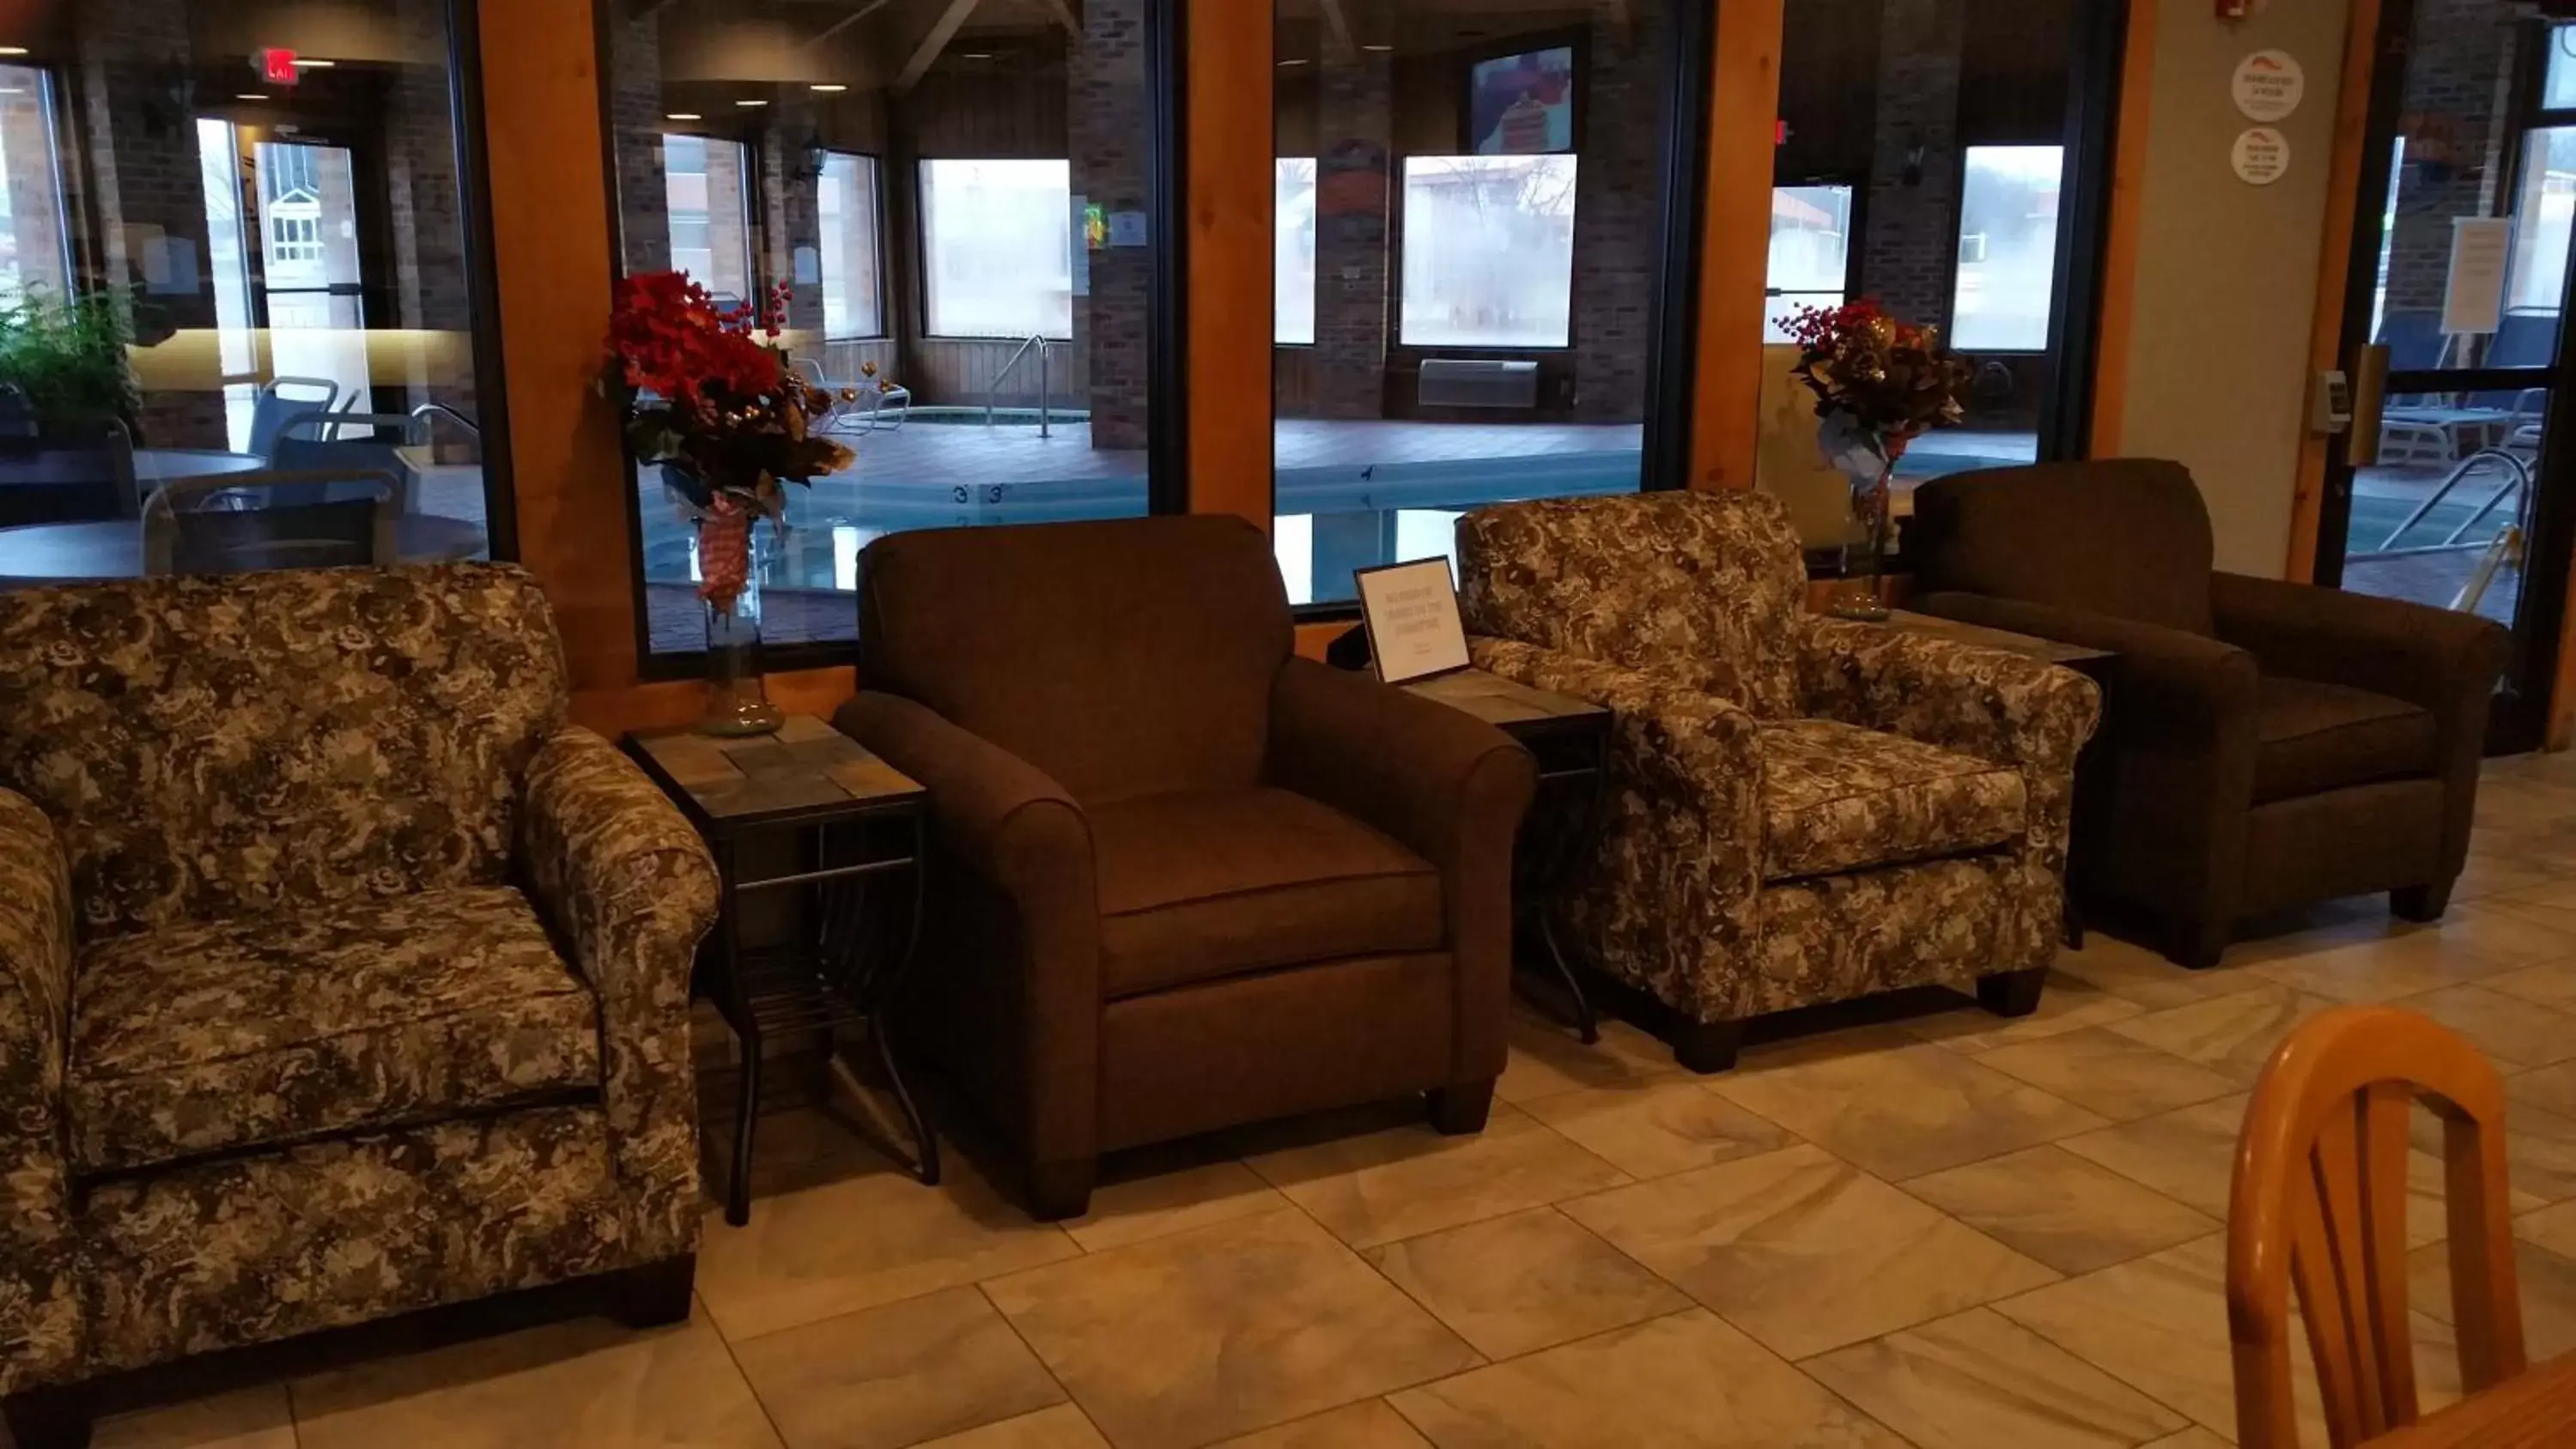 Lobby or reception, Lobby/Reception in Baymont by Wyndham Tuscola